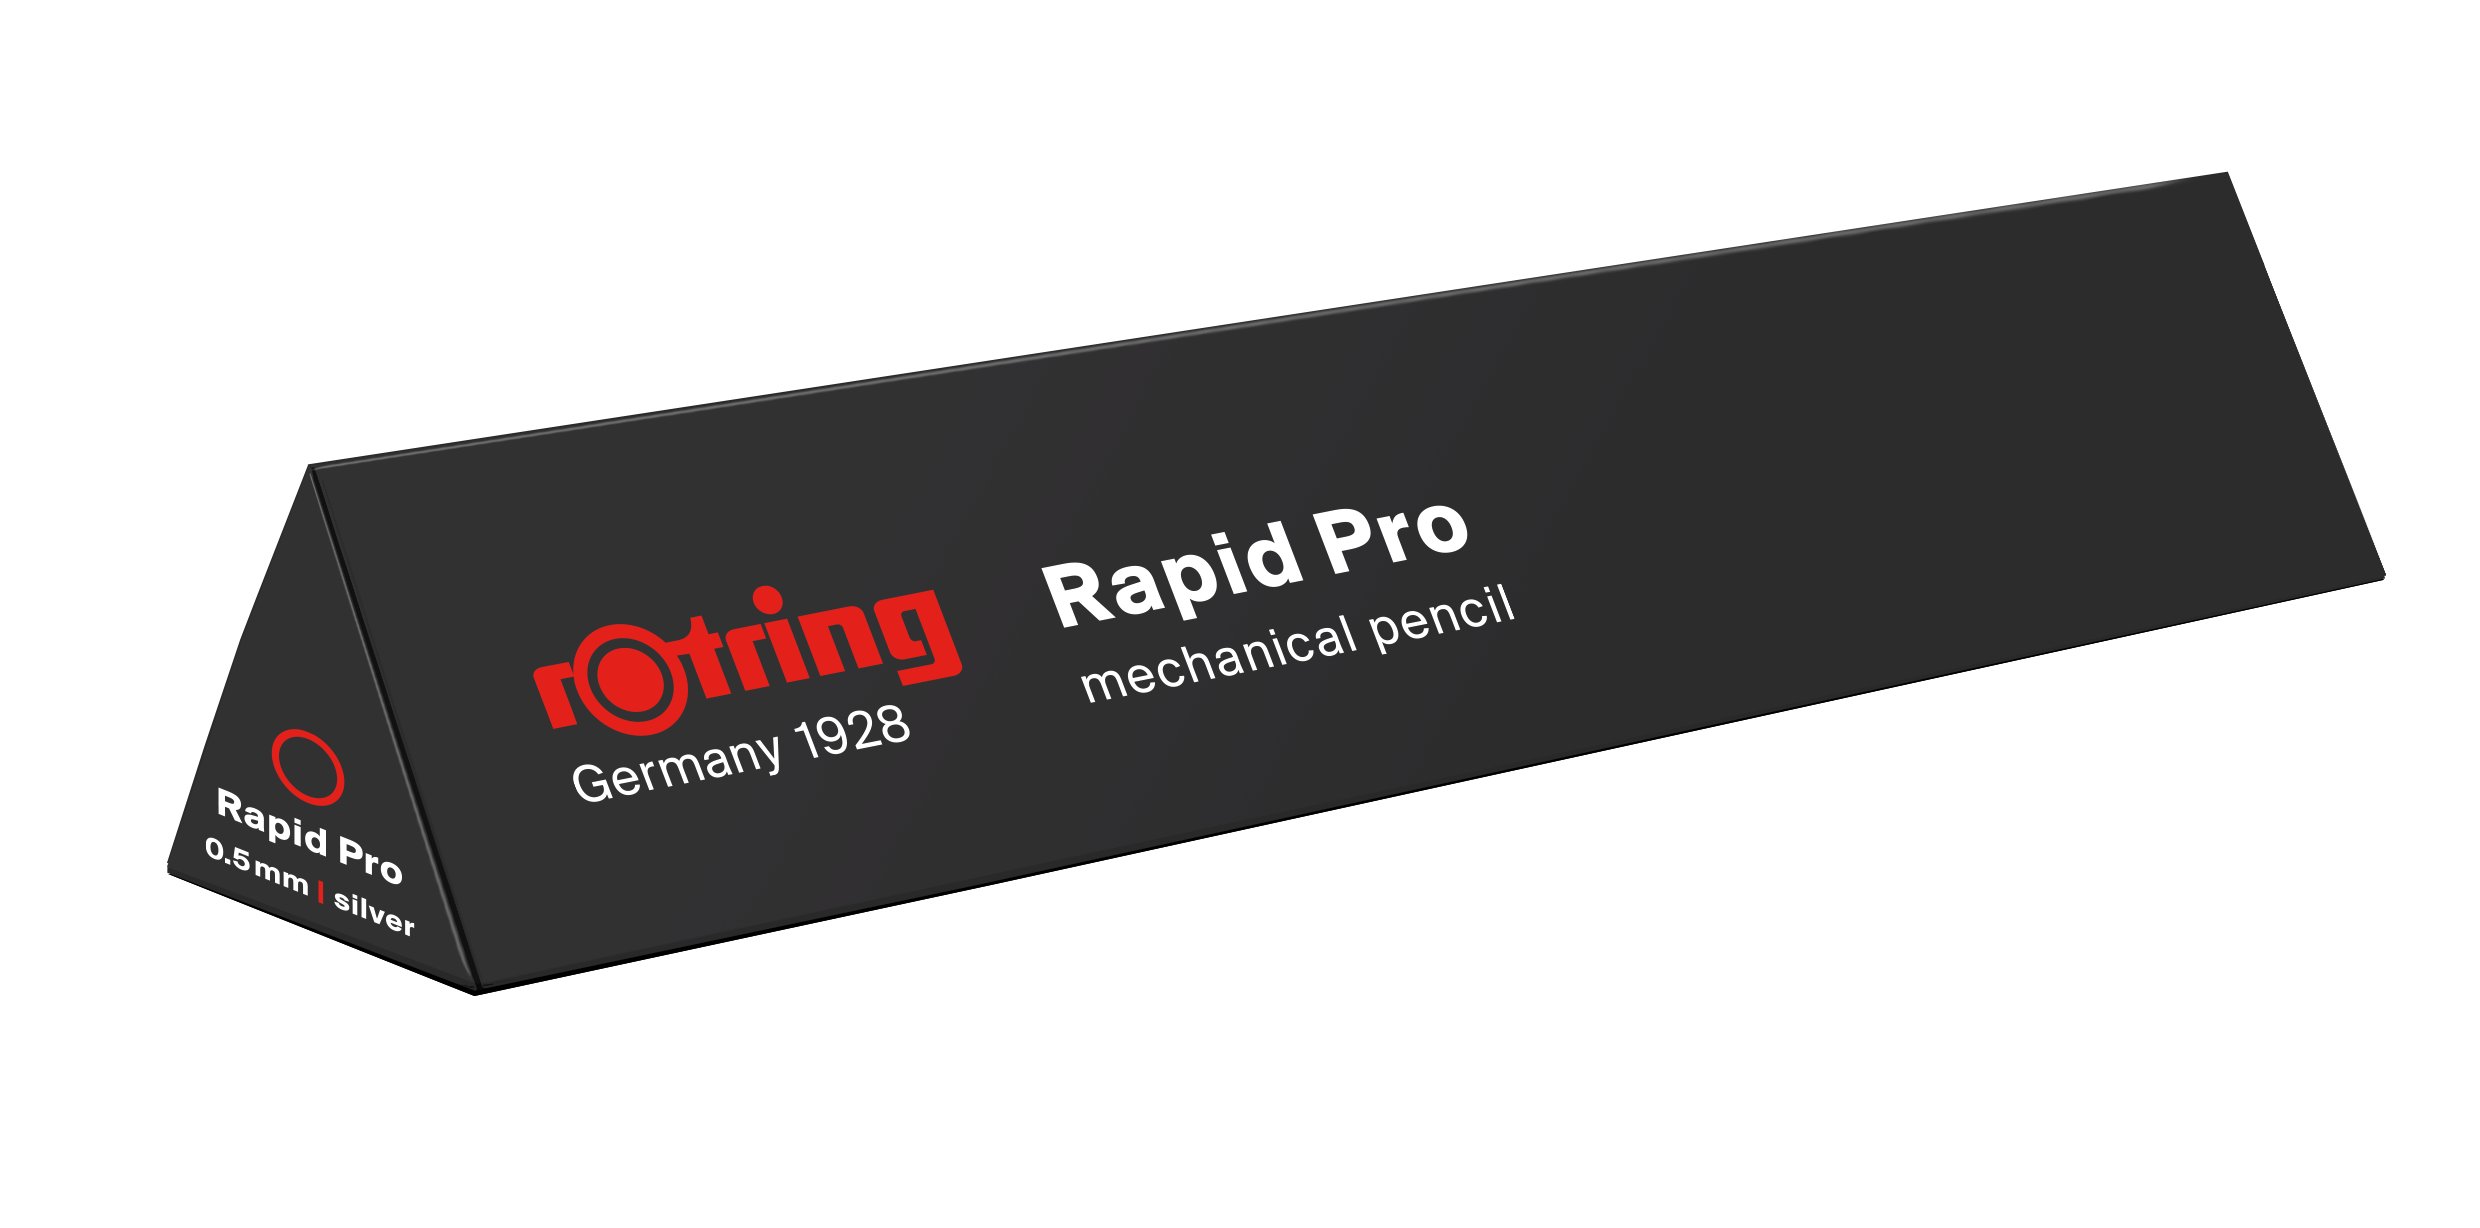 Rapid Pro メカニカル ペンシル | rOtring JP